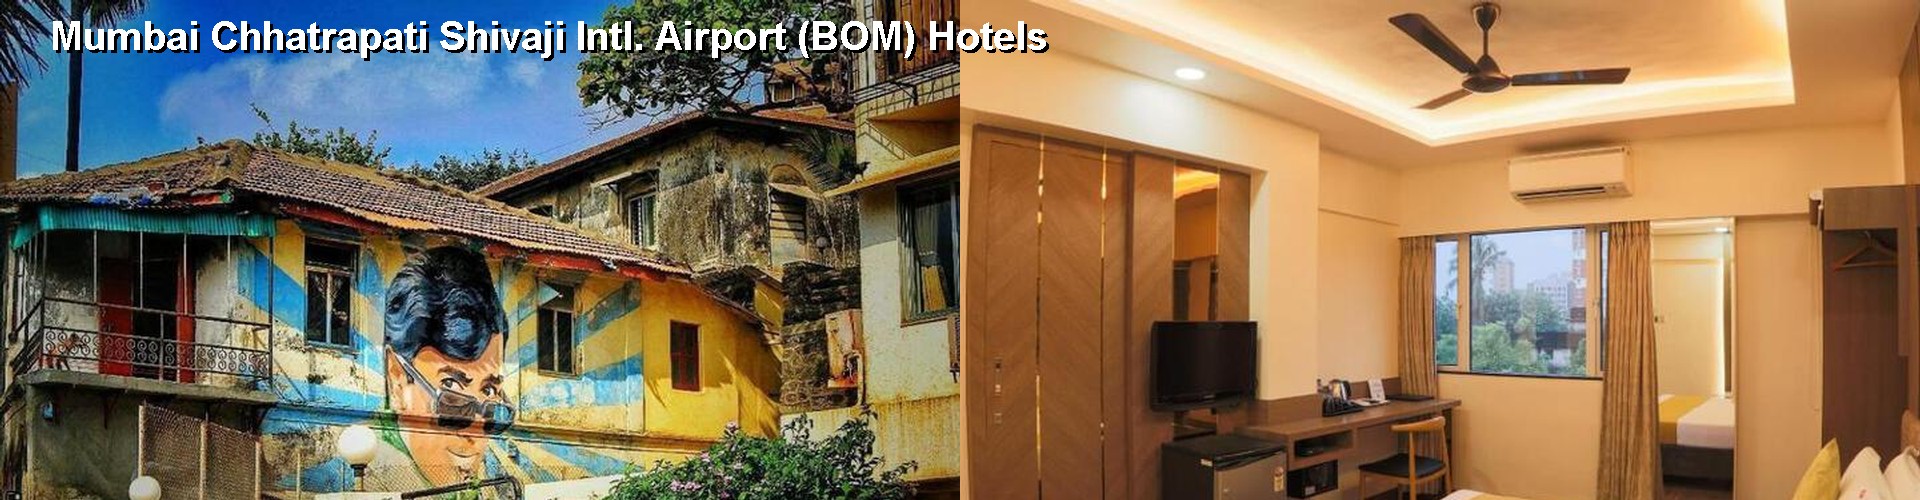 5 Best Hotels near Mumbai Chhatrapati Shivaji Intl. Airport (BOM)